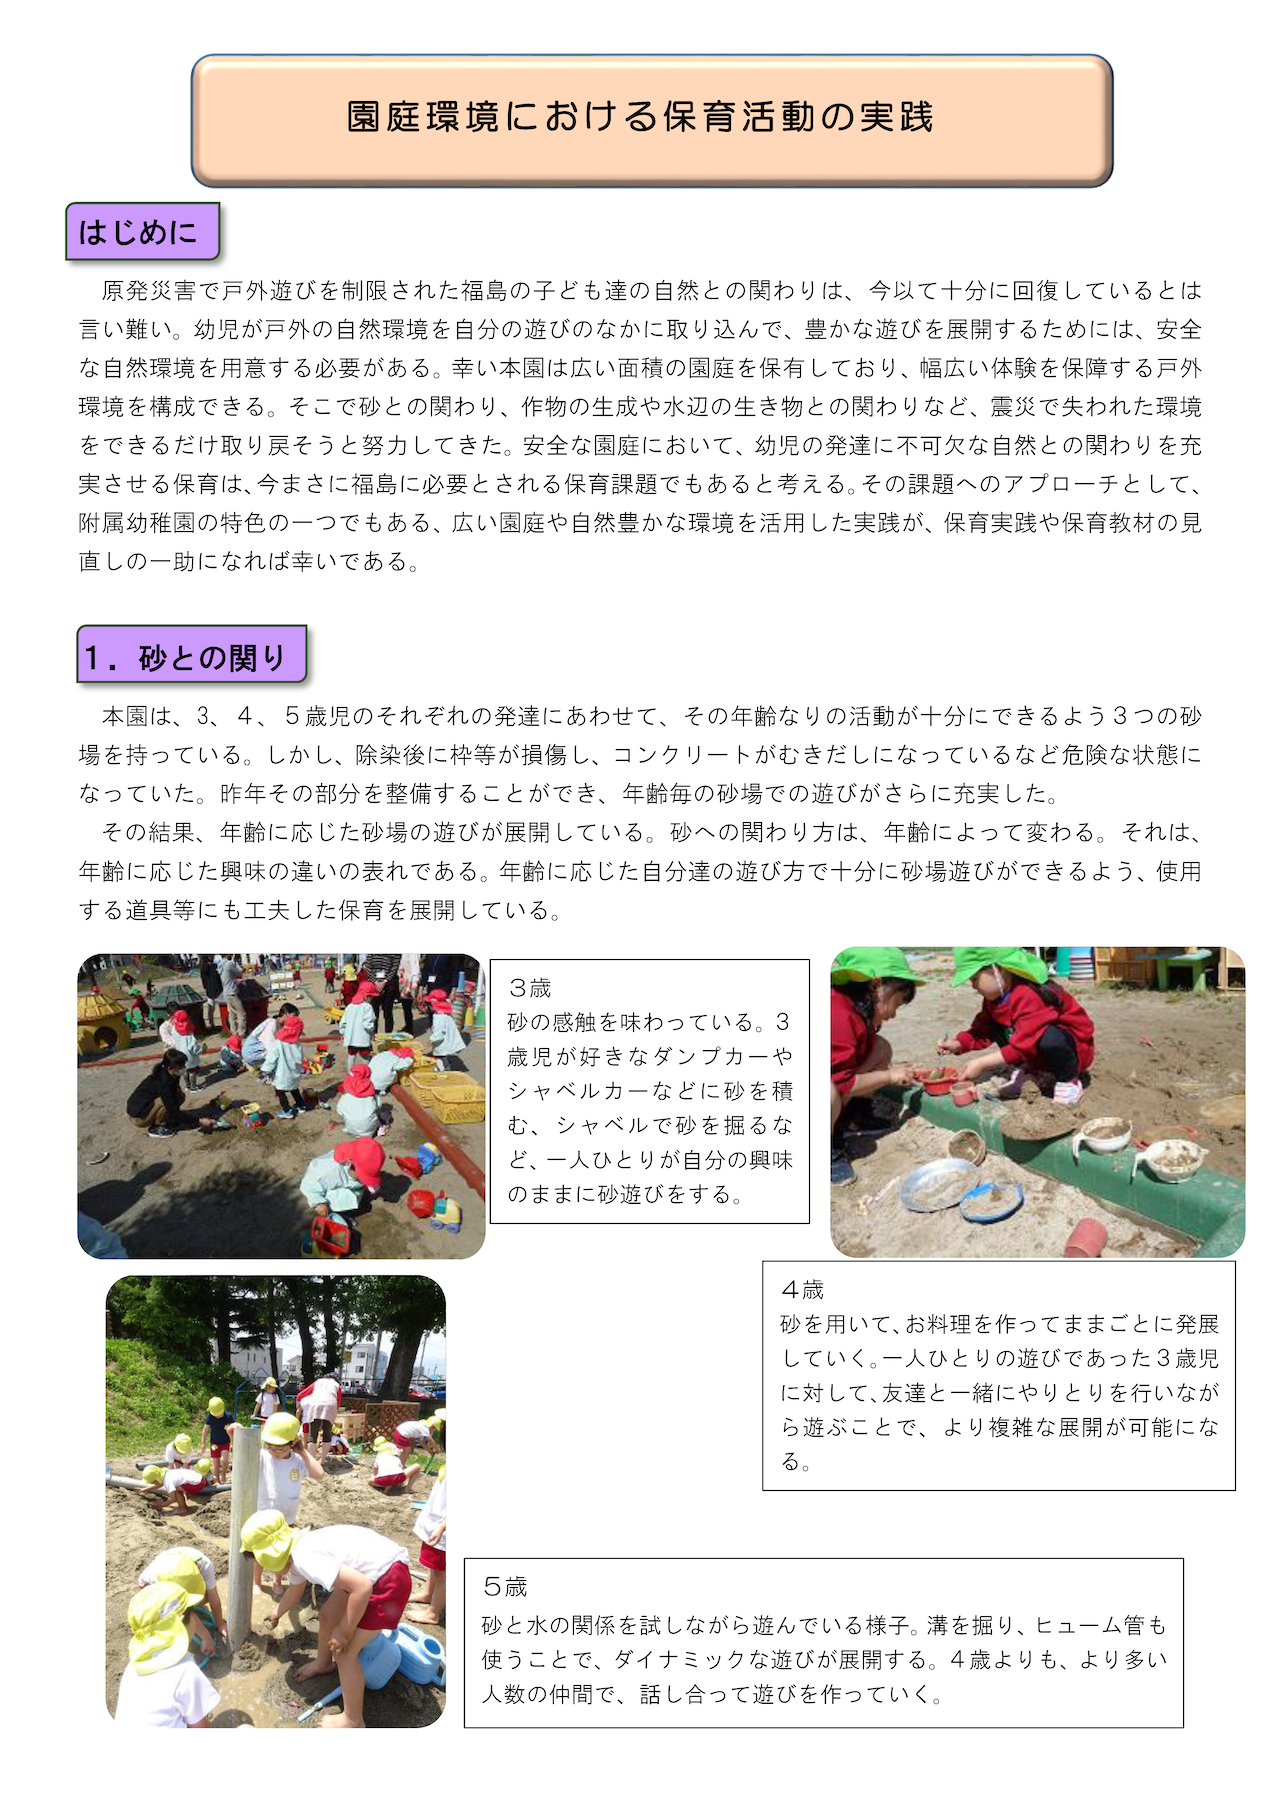 令和元年8月20日「園庭環境における保育活動の実践」